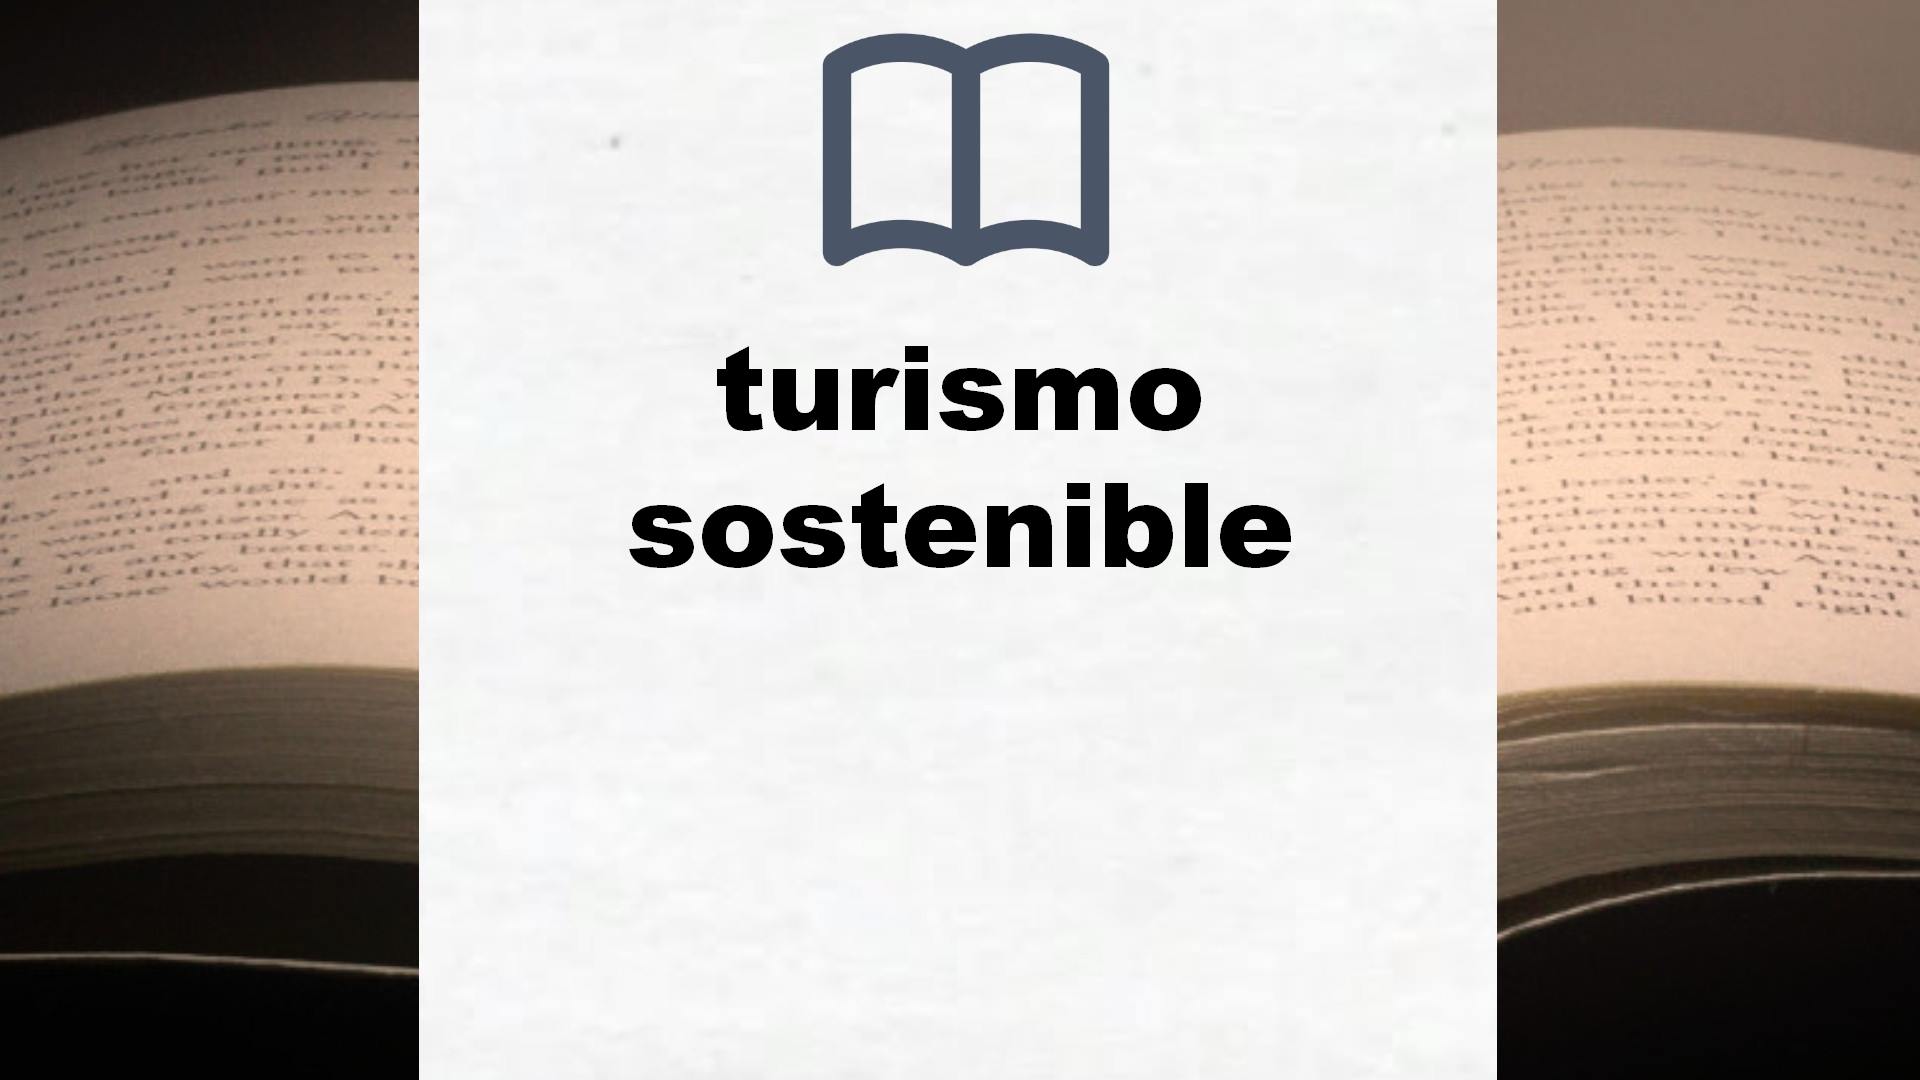 Libros sobre turismo sostenible